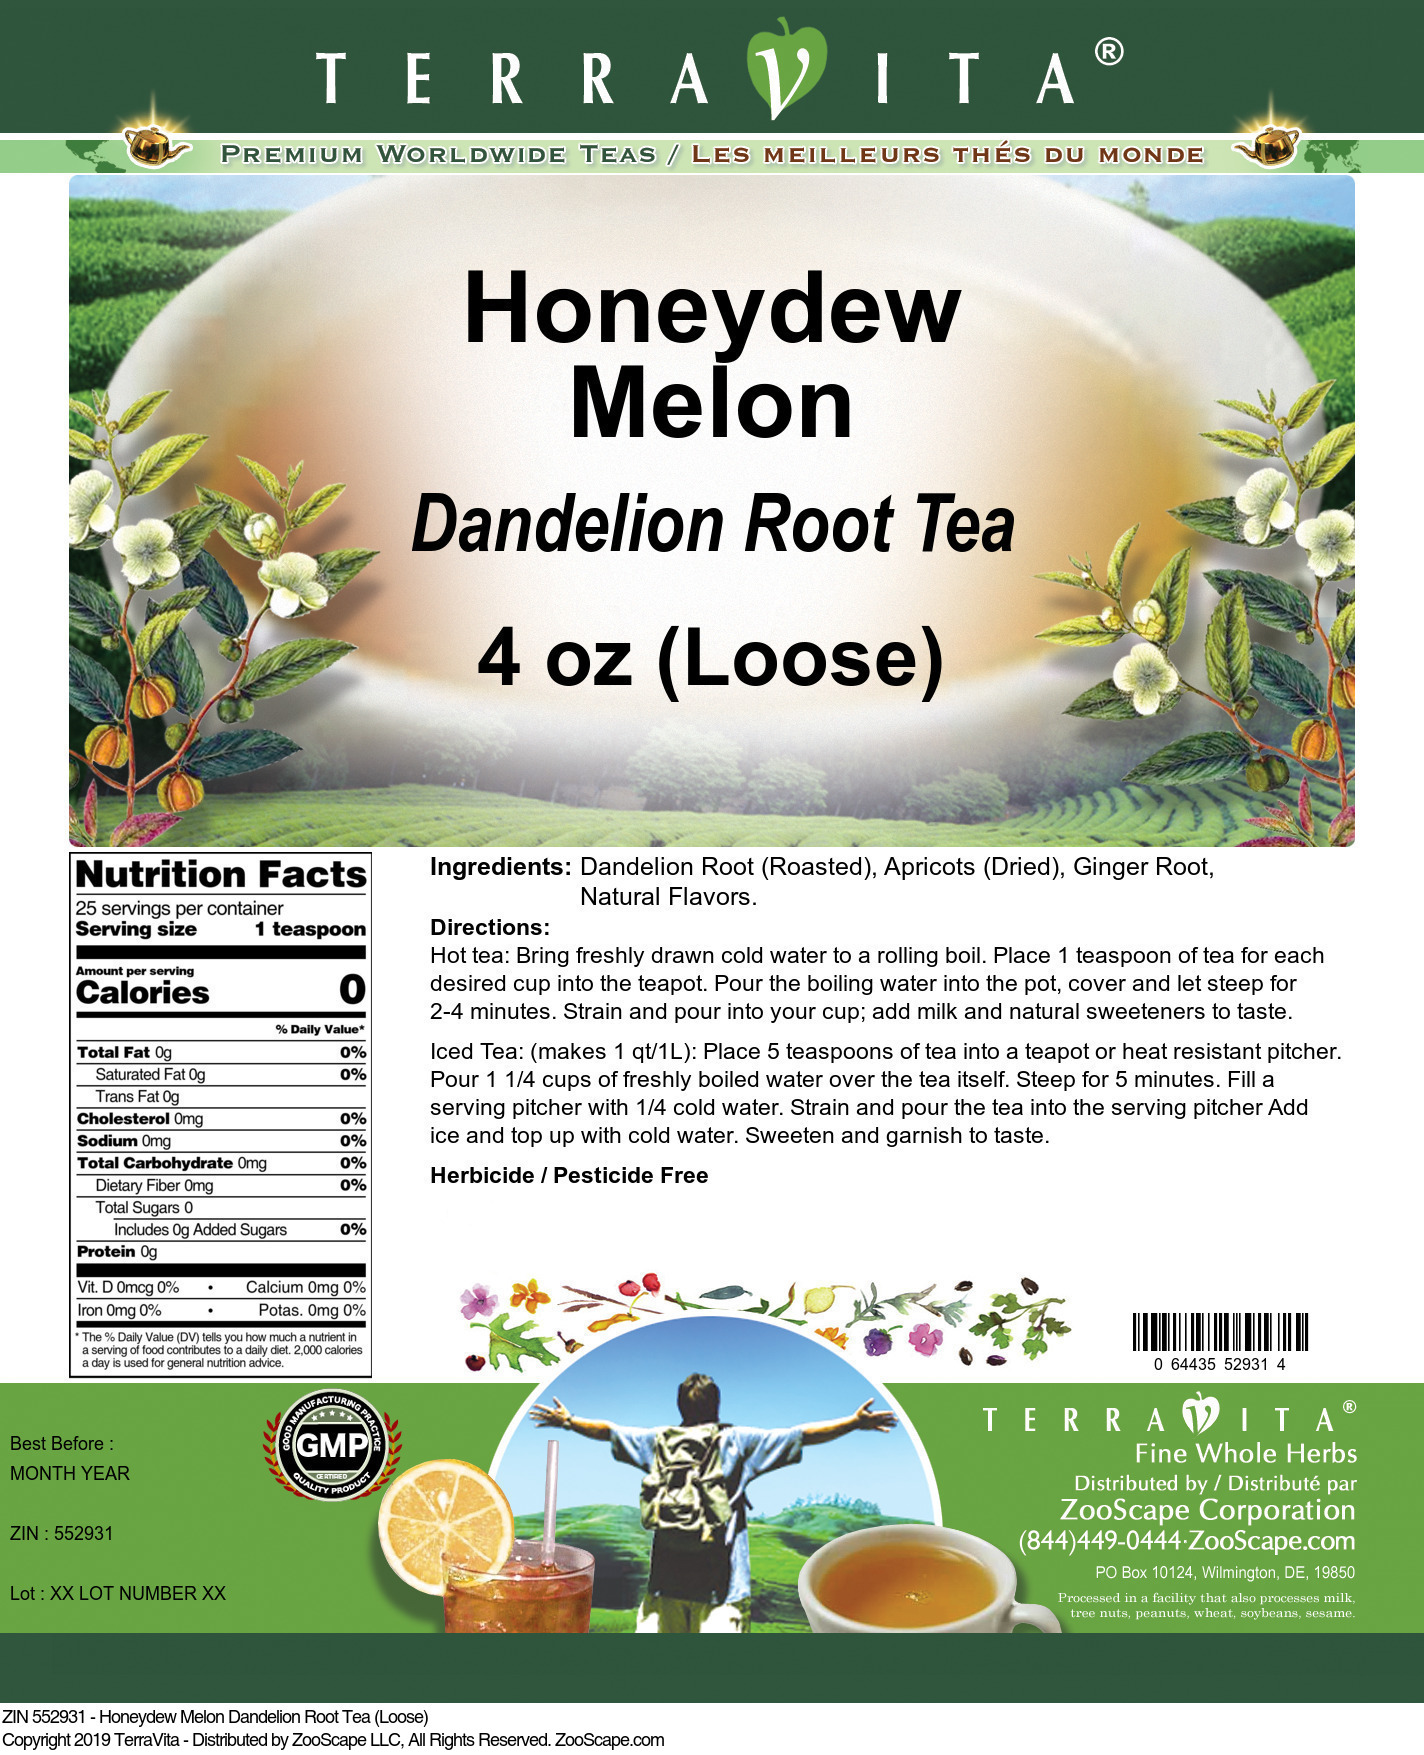 Honeydew Melon Dandelion Root Tea (Loose) - Label